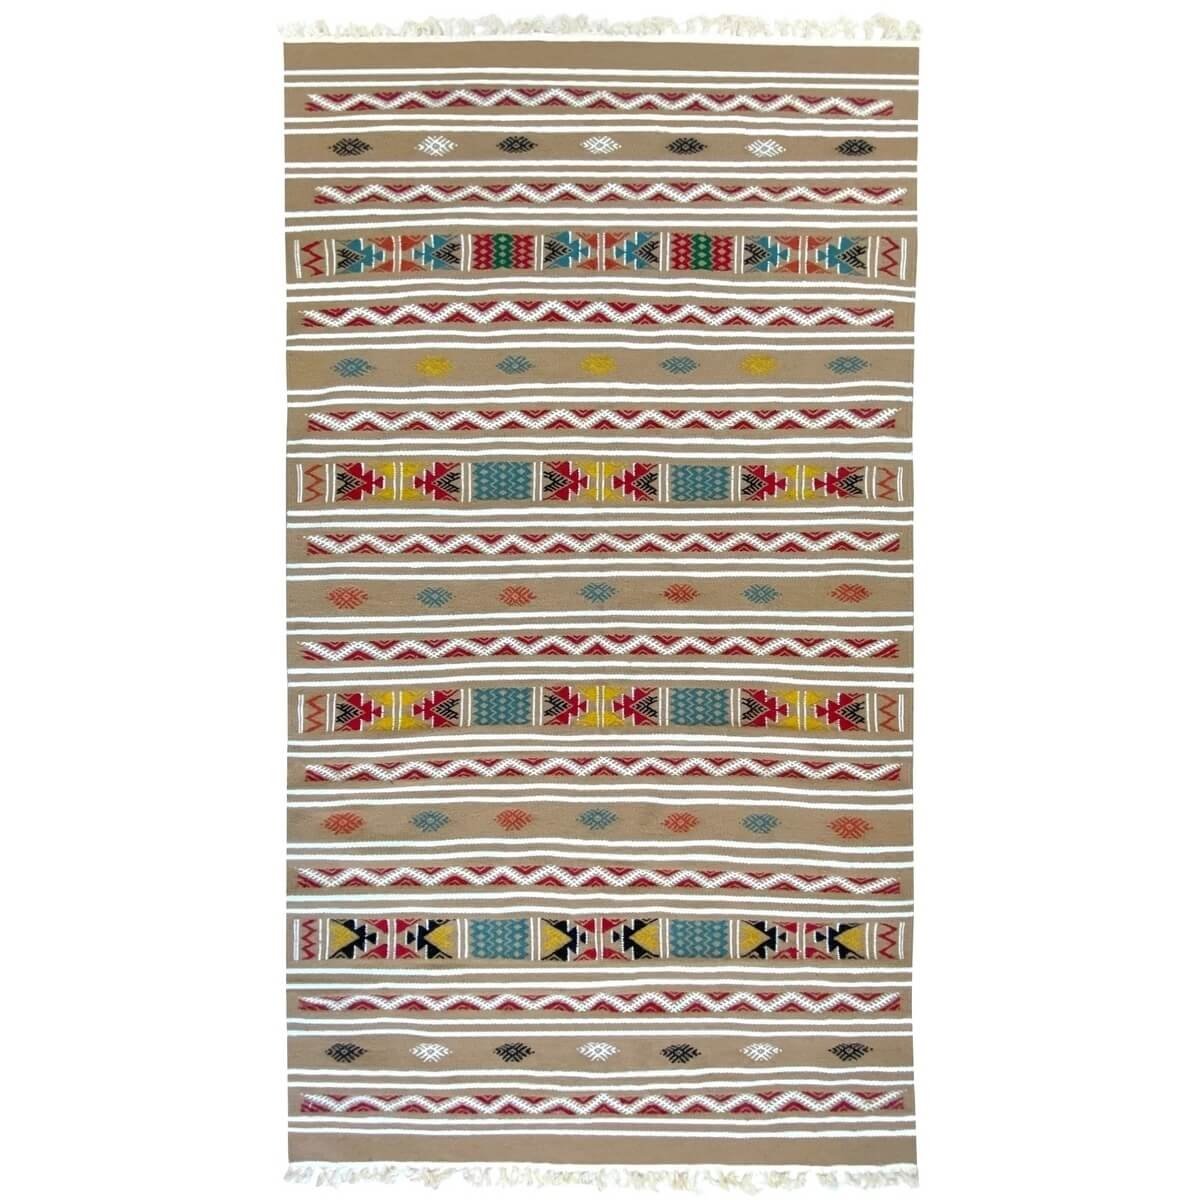 Tapete berbere Tapete Kilim Azel 115x215 Bege/Multicor (Tecidos à mão, Lã) Tapete tunisiano kilim, estilo marroquino. Tapete ret